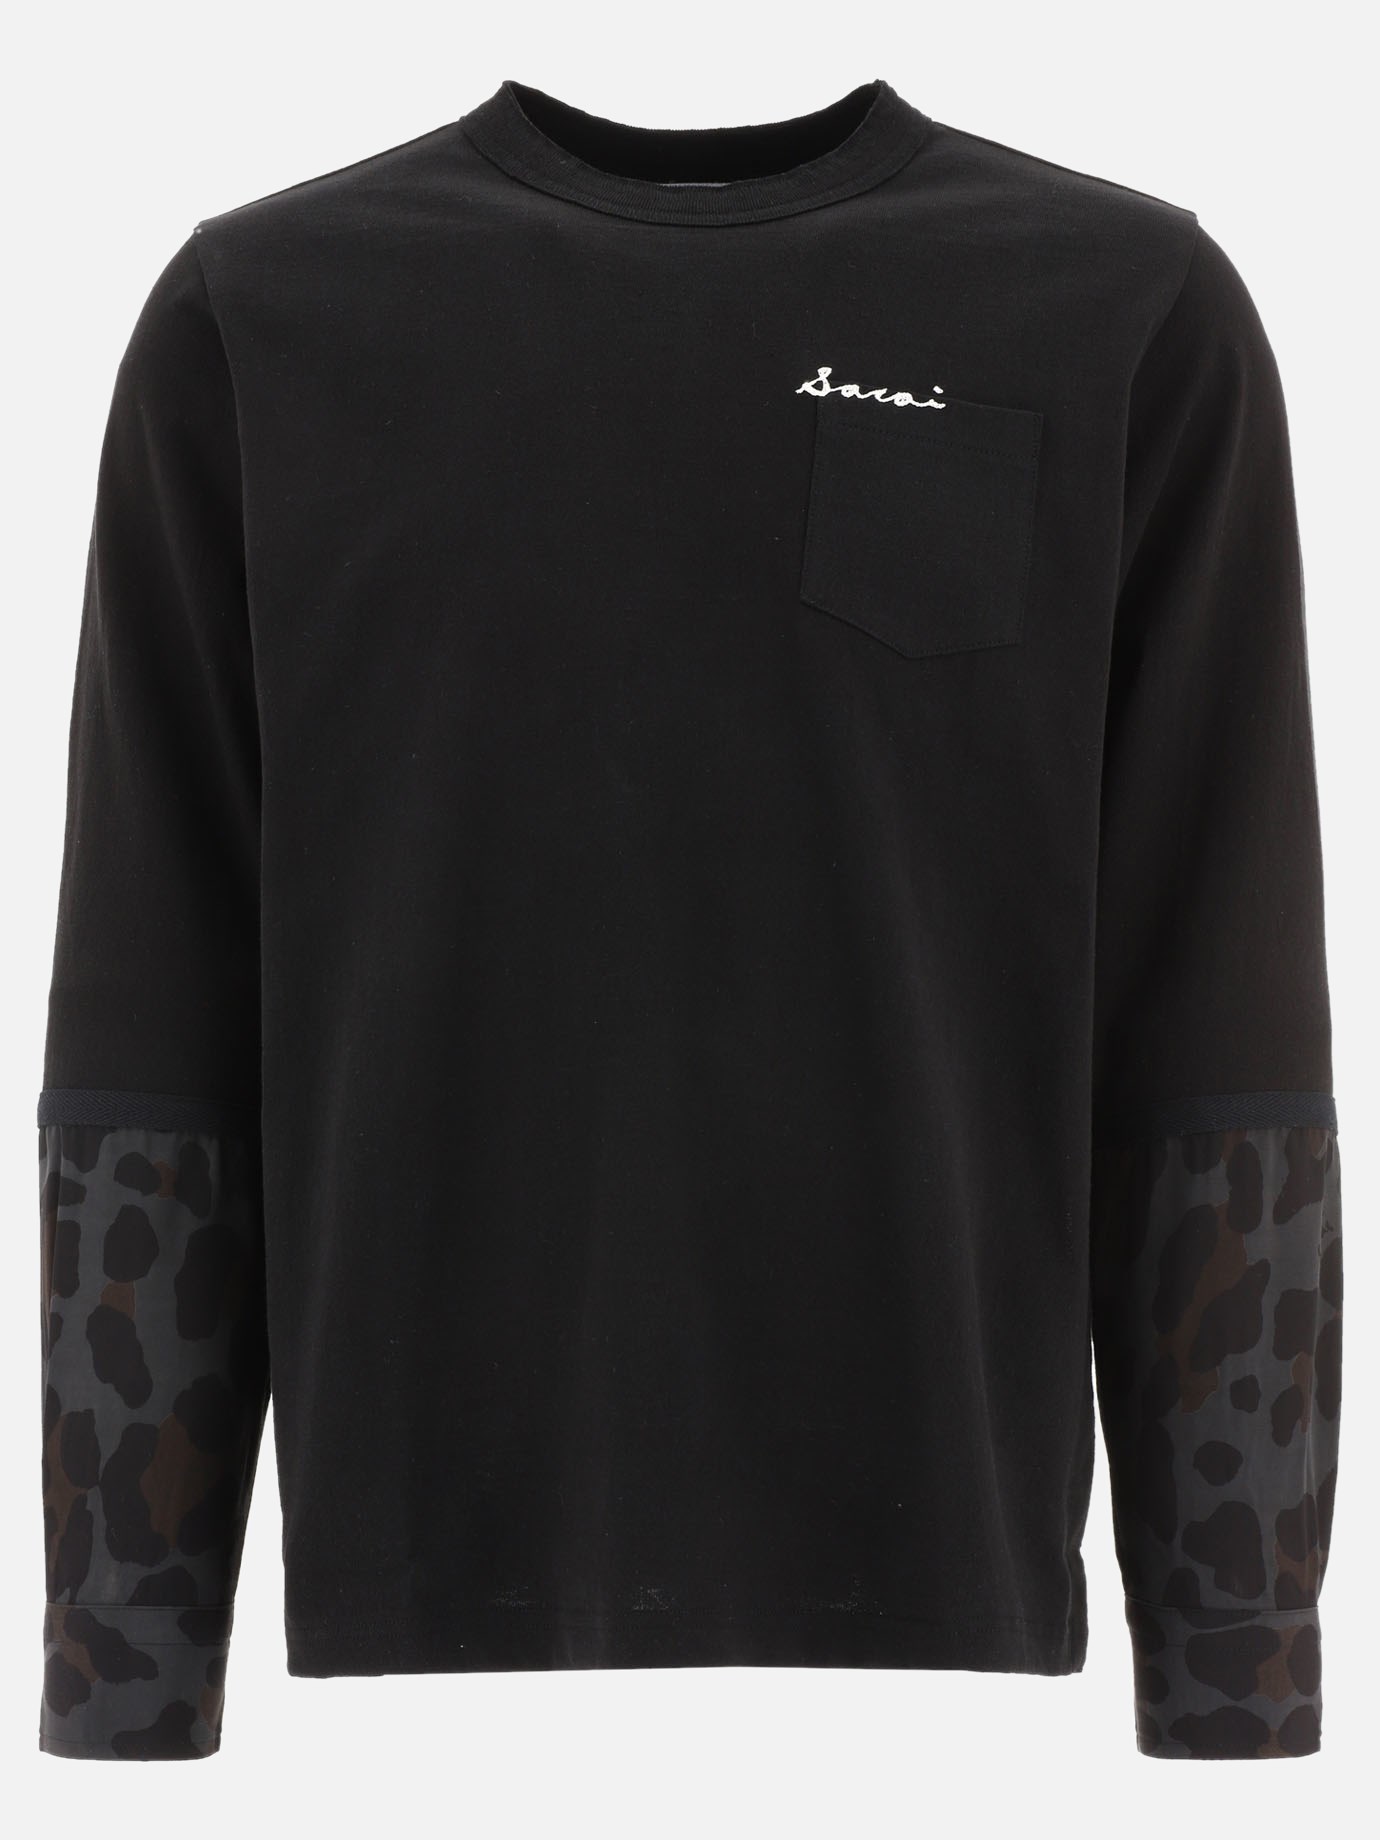  Leopard  t-shirtby Sacai - 0